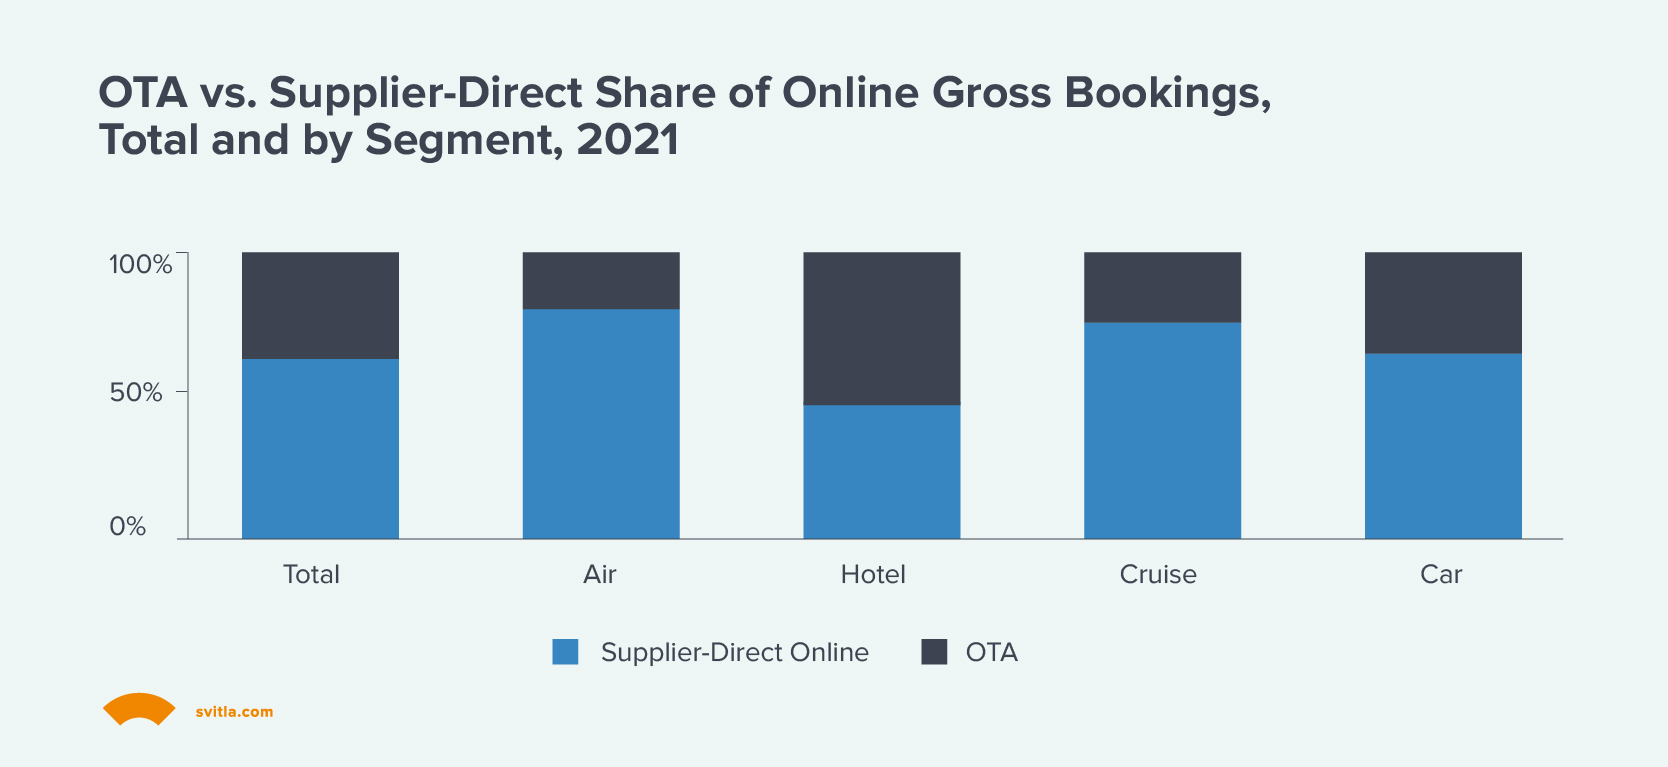 OTA vs. Supplier-Direct Share of Online Gross Bookings